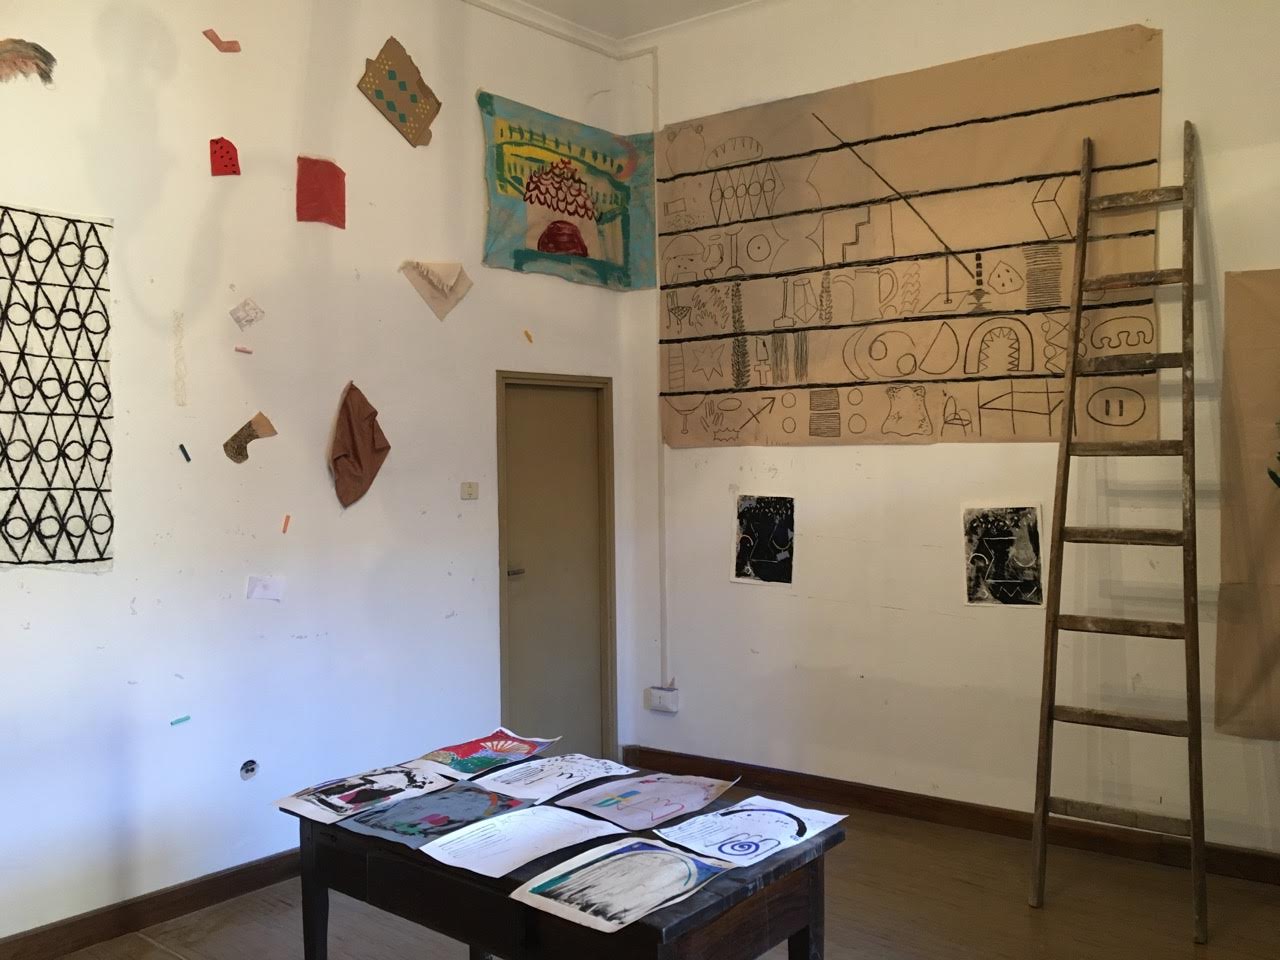   2017 installation at the International Centre for the Arts in Monte Castello di Vibio     